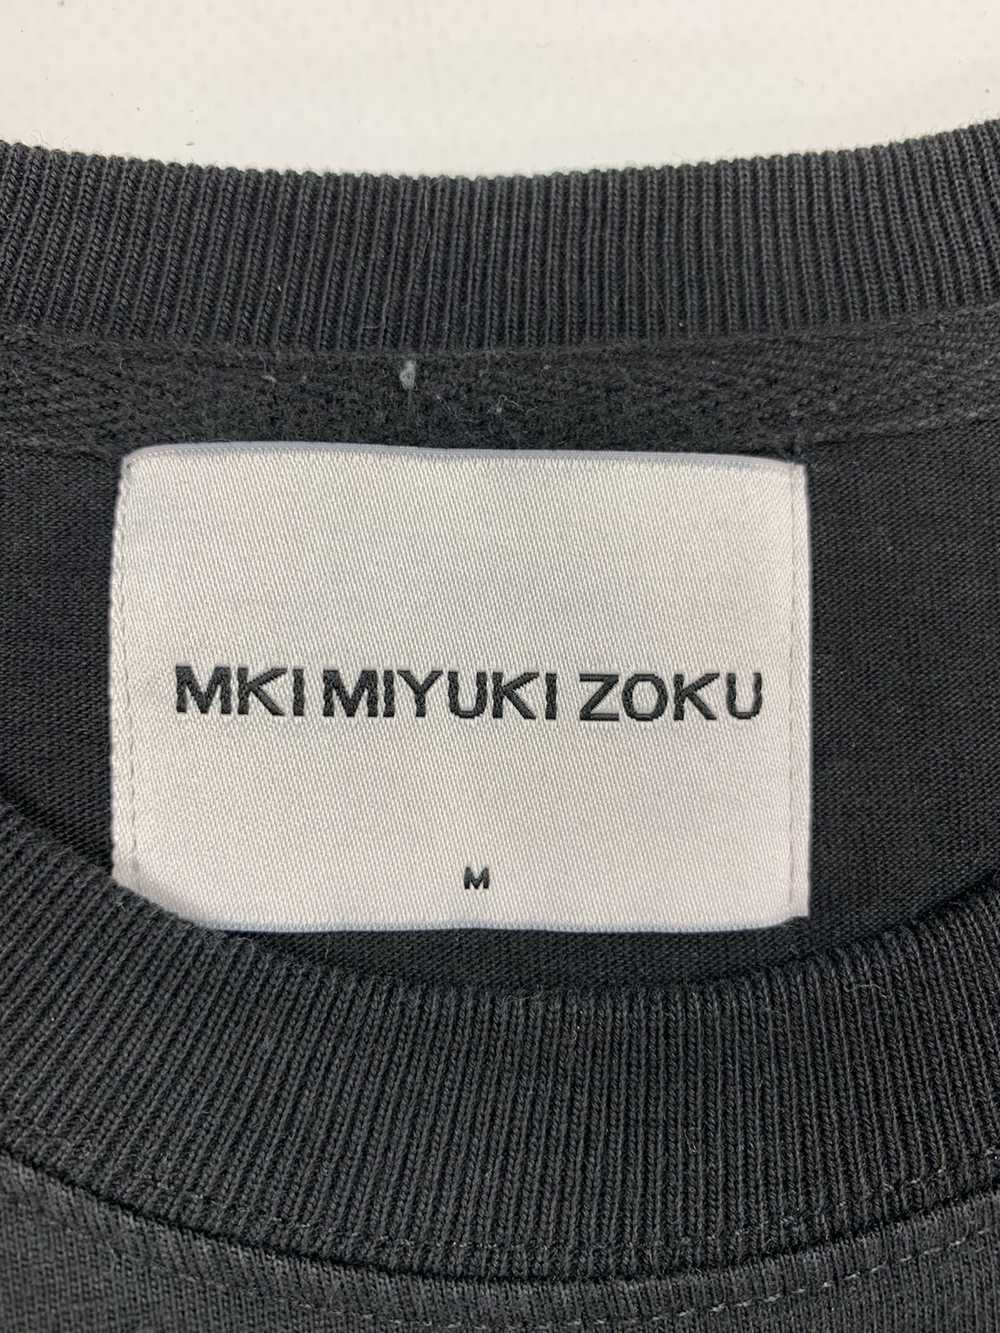 Mki Miyuki-Zoku Mki Miyuki Zoku T Shirt Japanese … - image 4